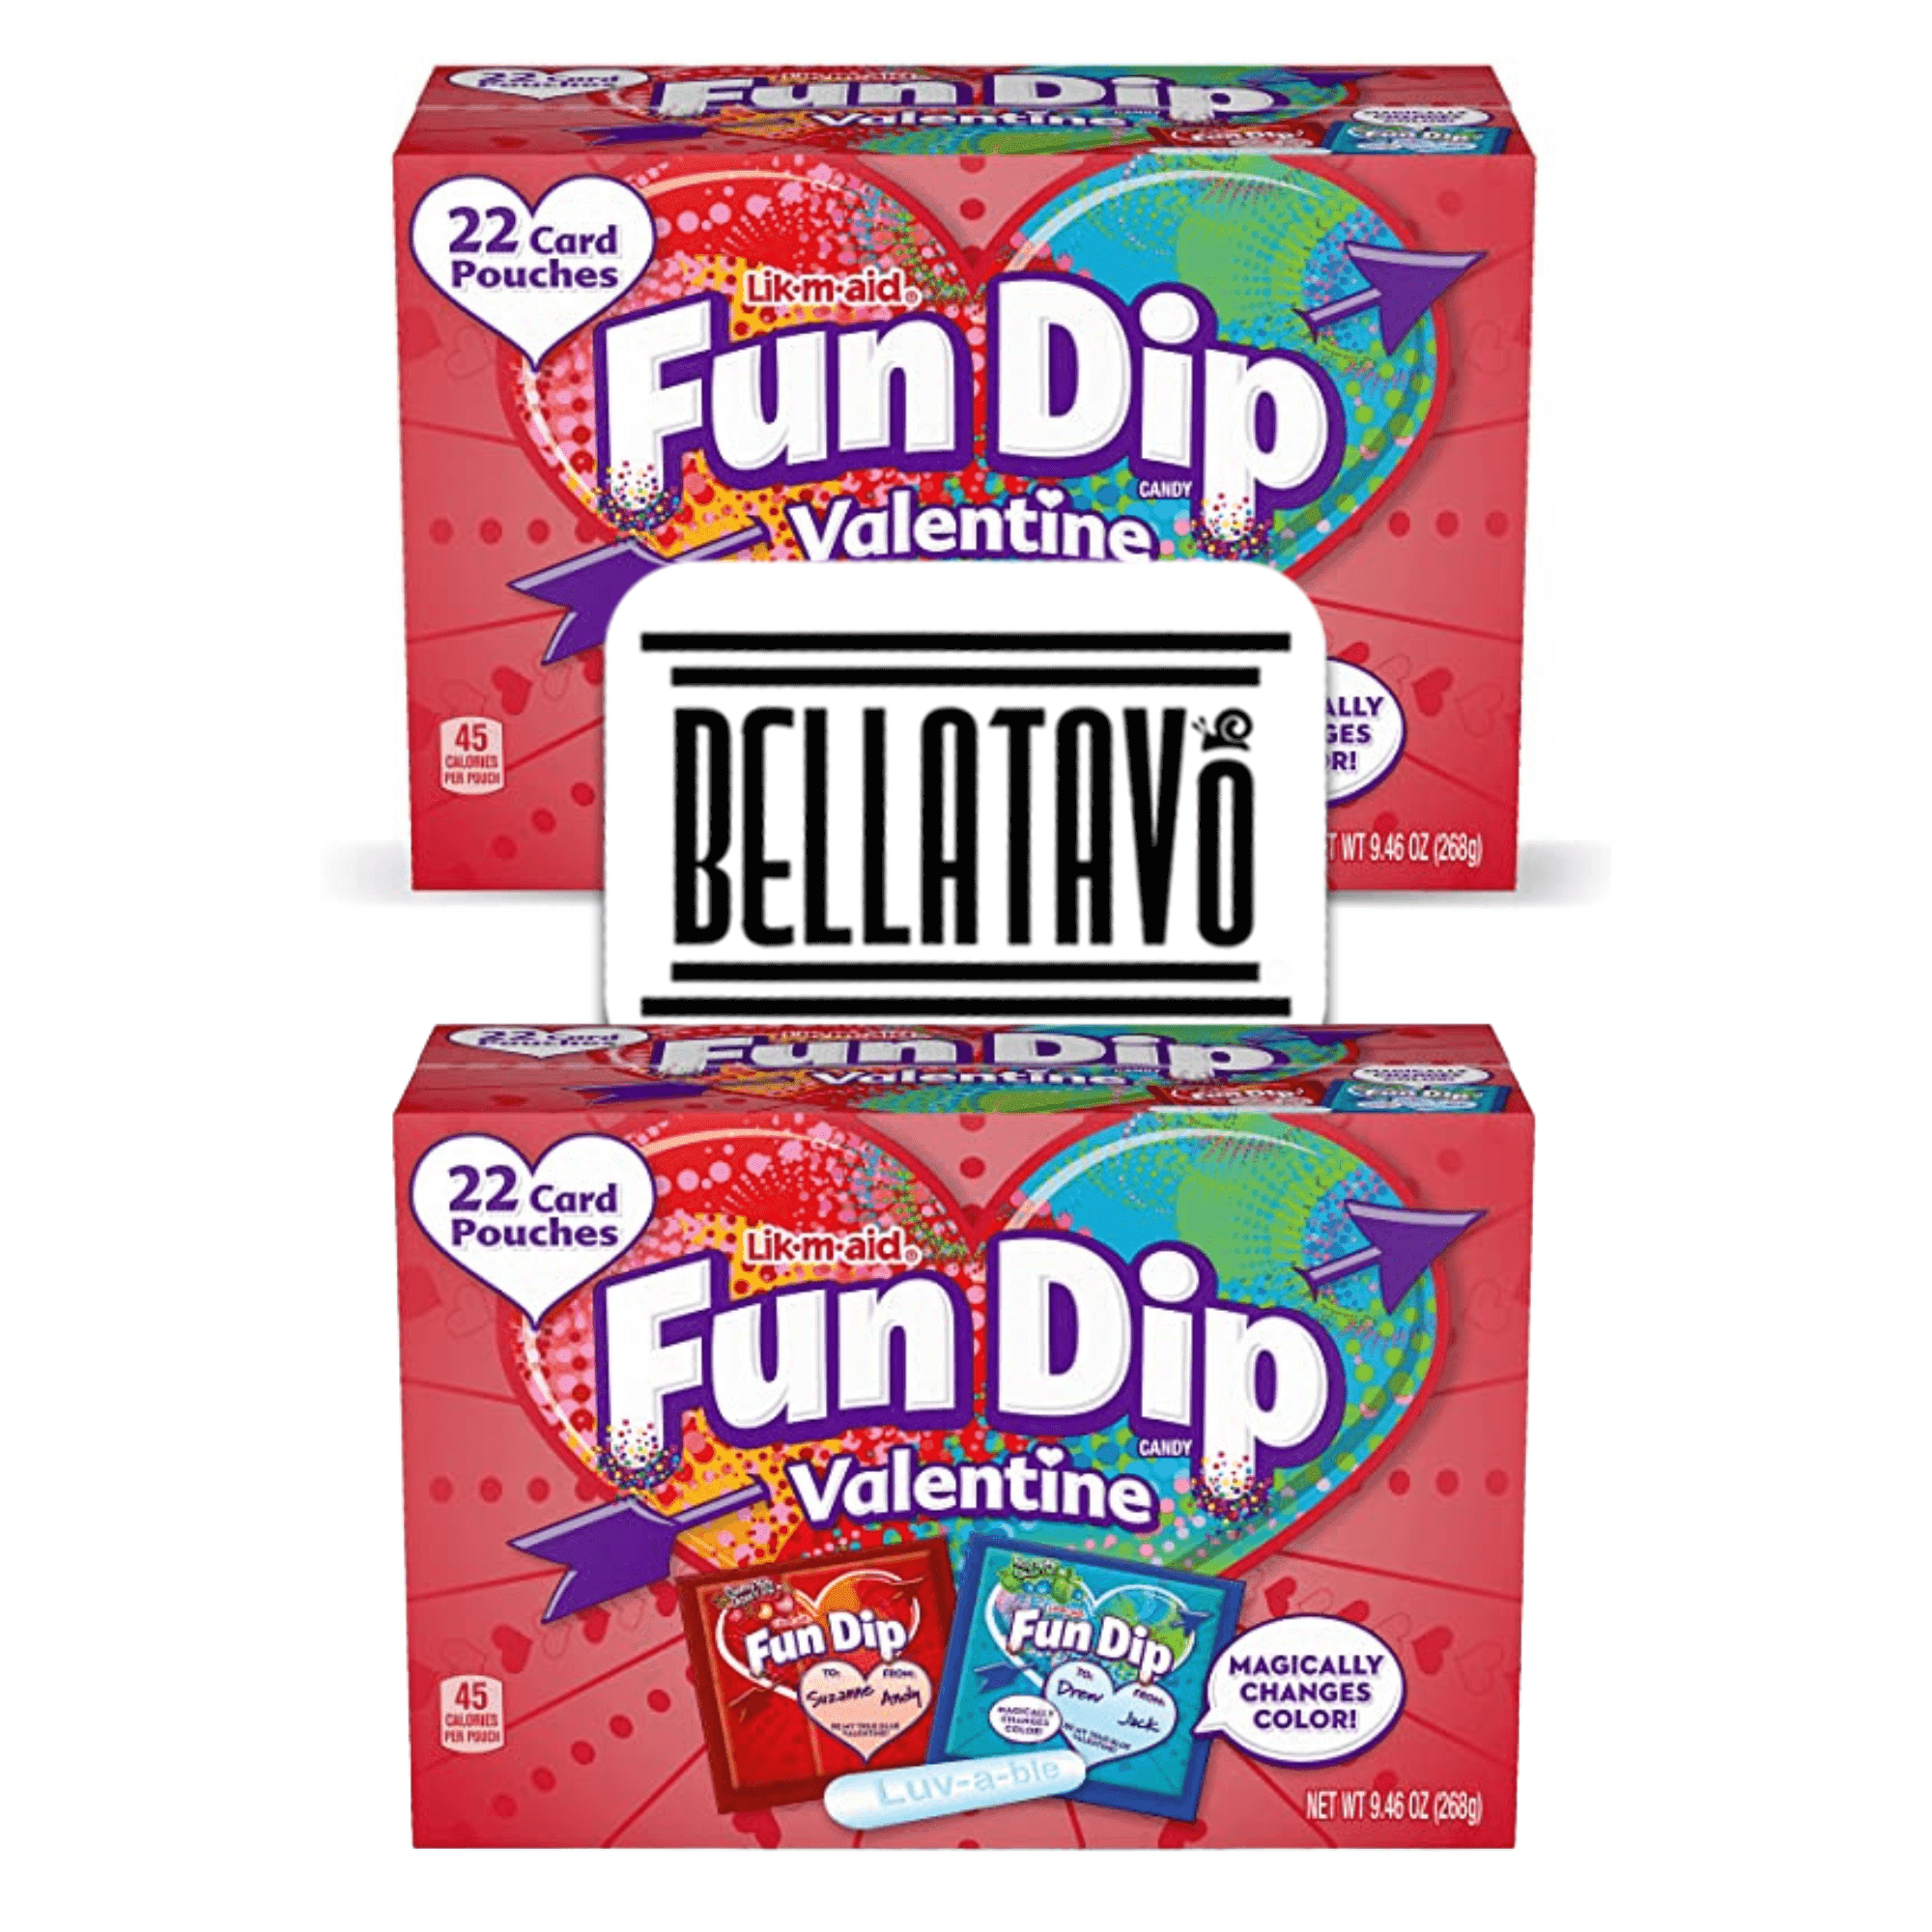 Lik-M-Aid Fun Dip Candy, Maui Punch, Valentine - 22 card pouches, 9.46 oz